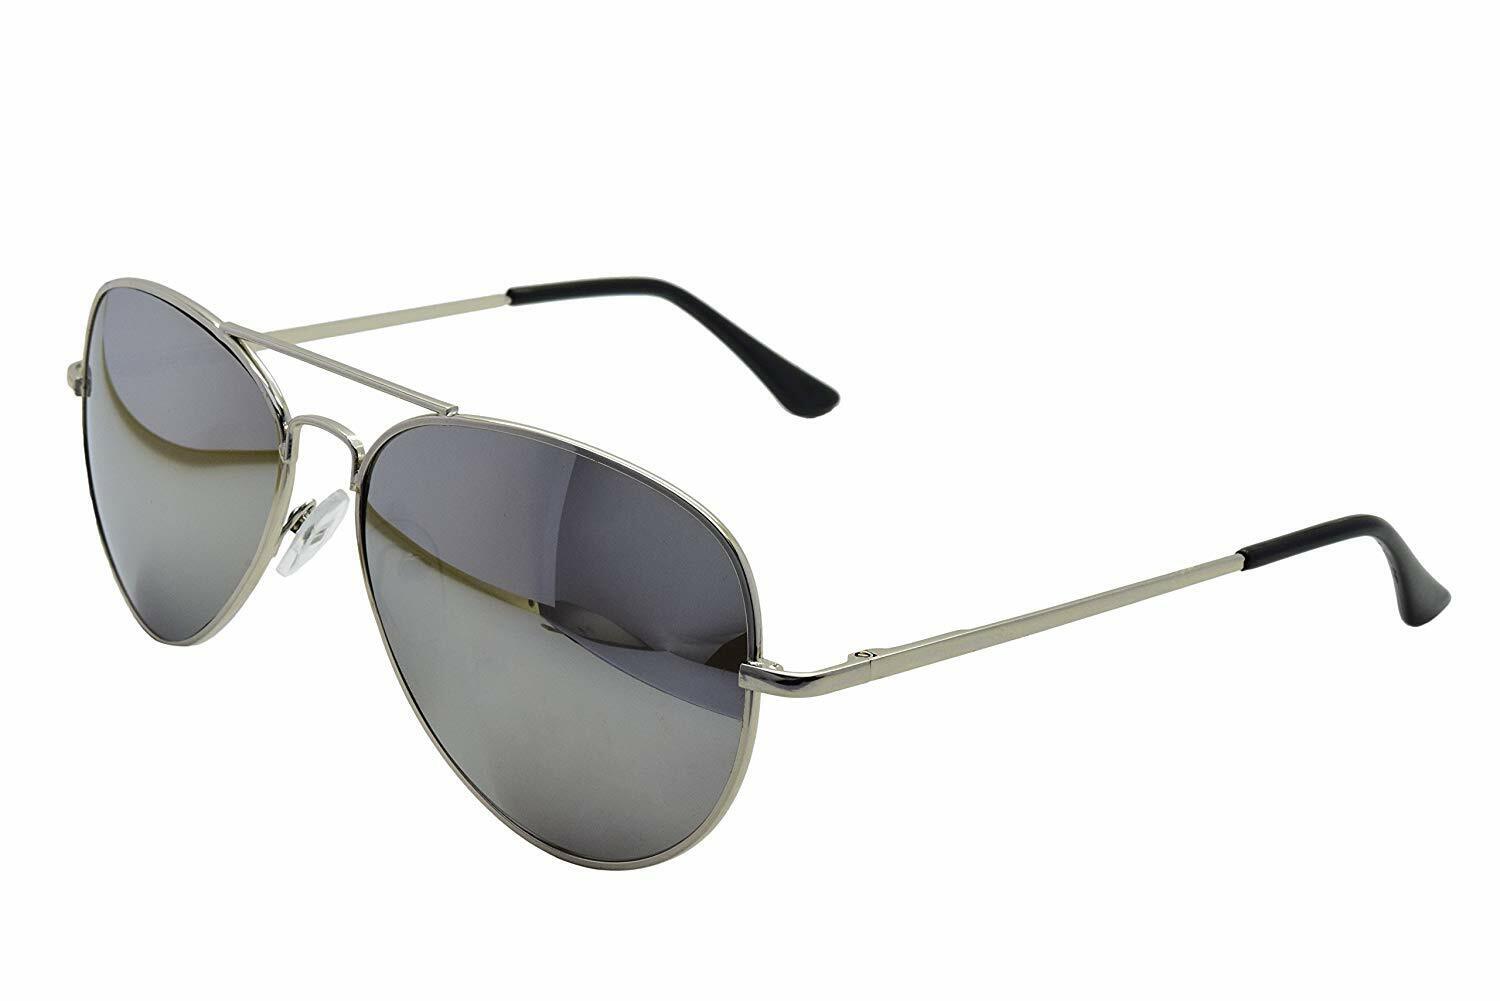 Sunglasses Men\'s Ladies Silver Mirror Lens UV400 Designer Brand ASVP